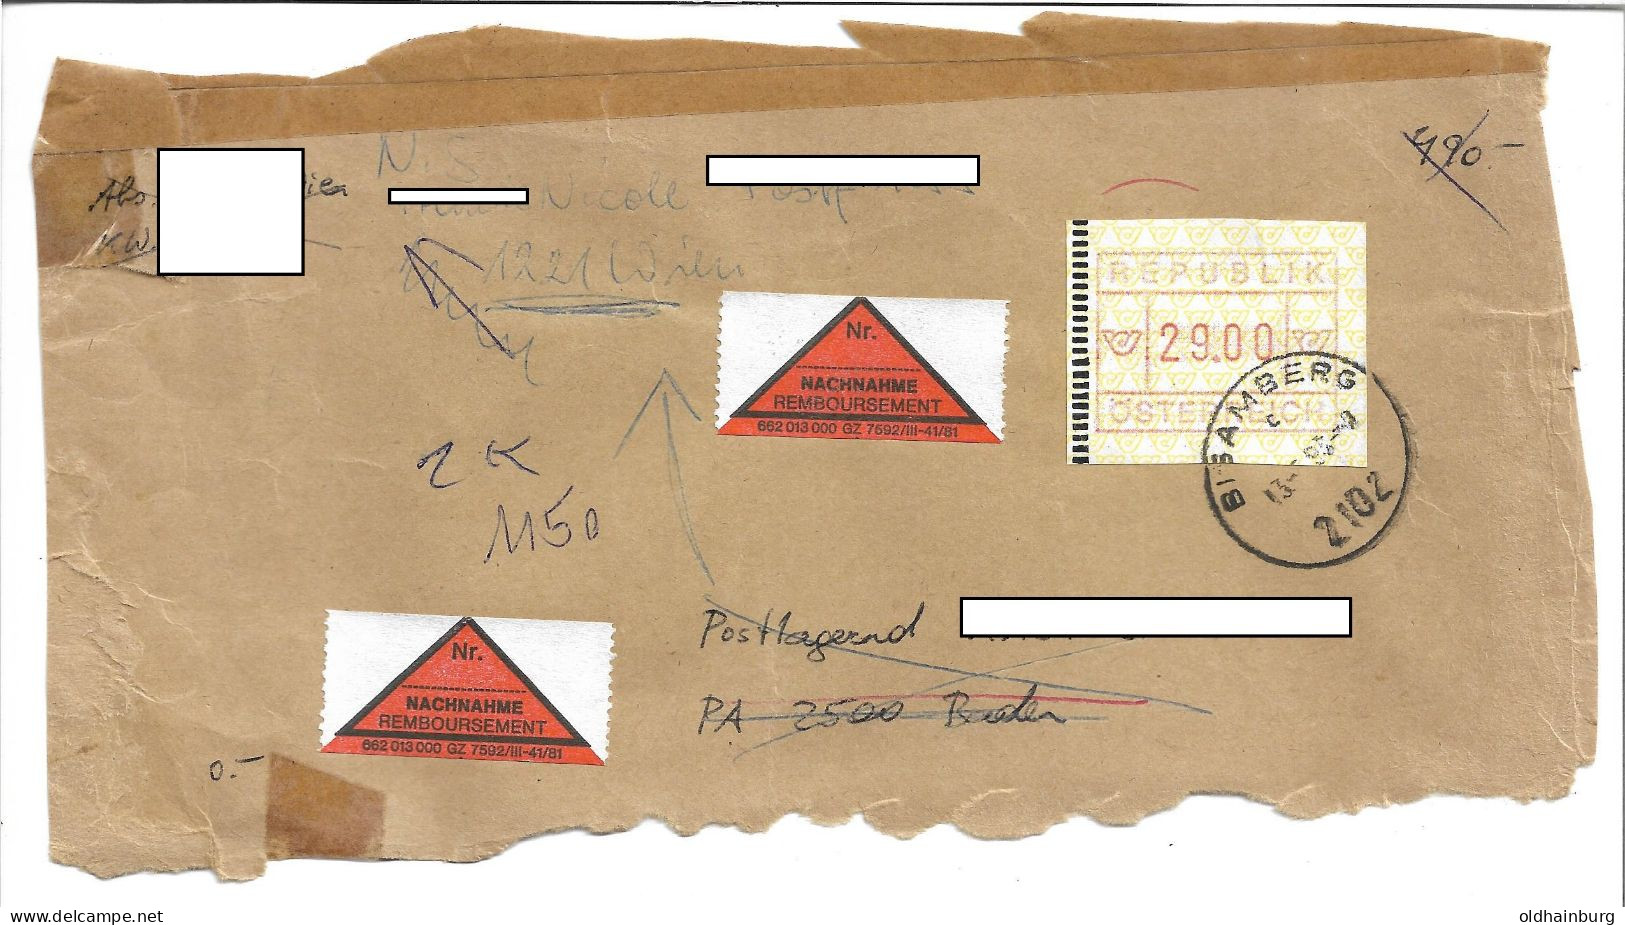 1619o: Österreich 1993, ATM Auf Nachnahme- Briefvorderseite, 29.00 ÖS Bedarfspost 2102 Bisamberg - Korneuburg